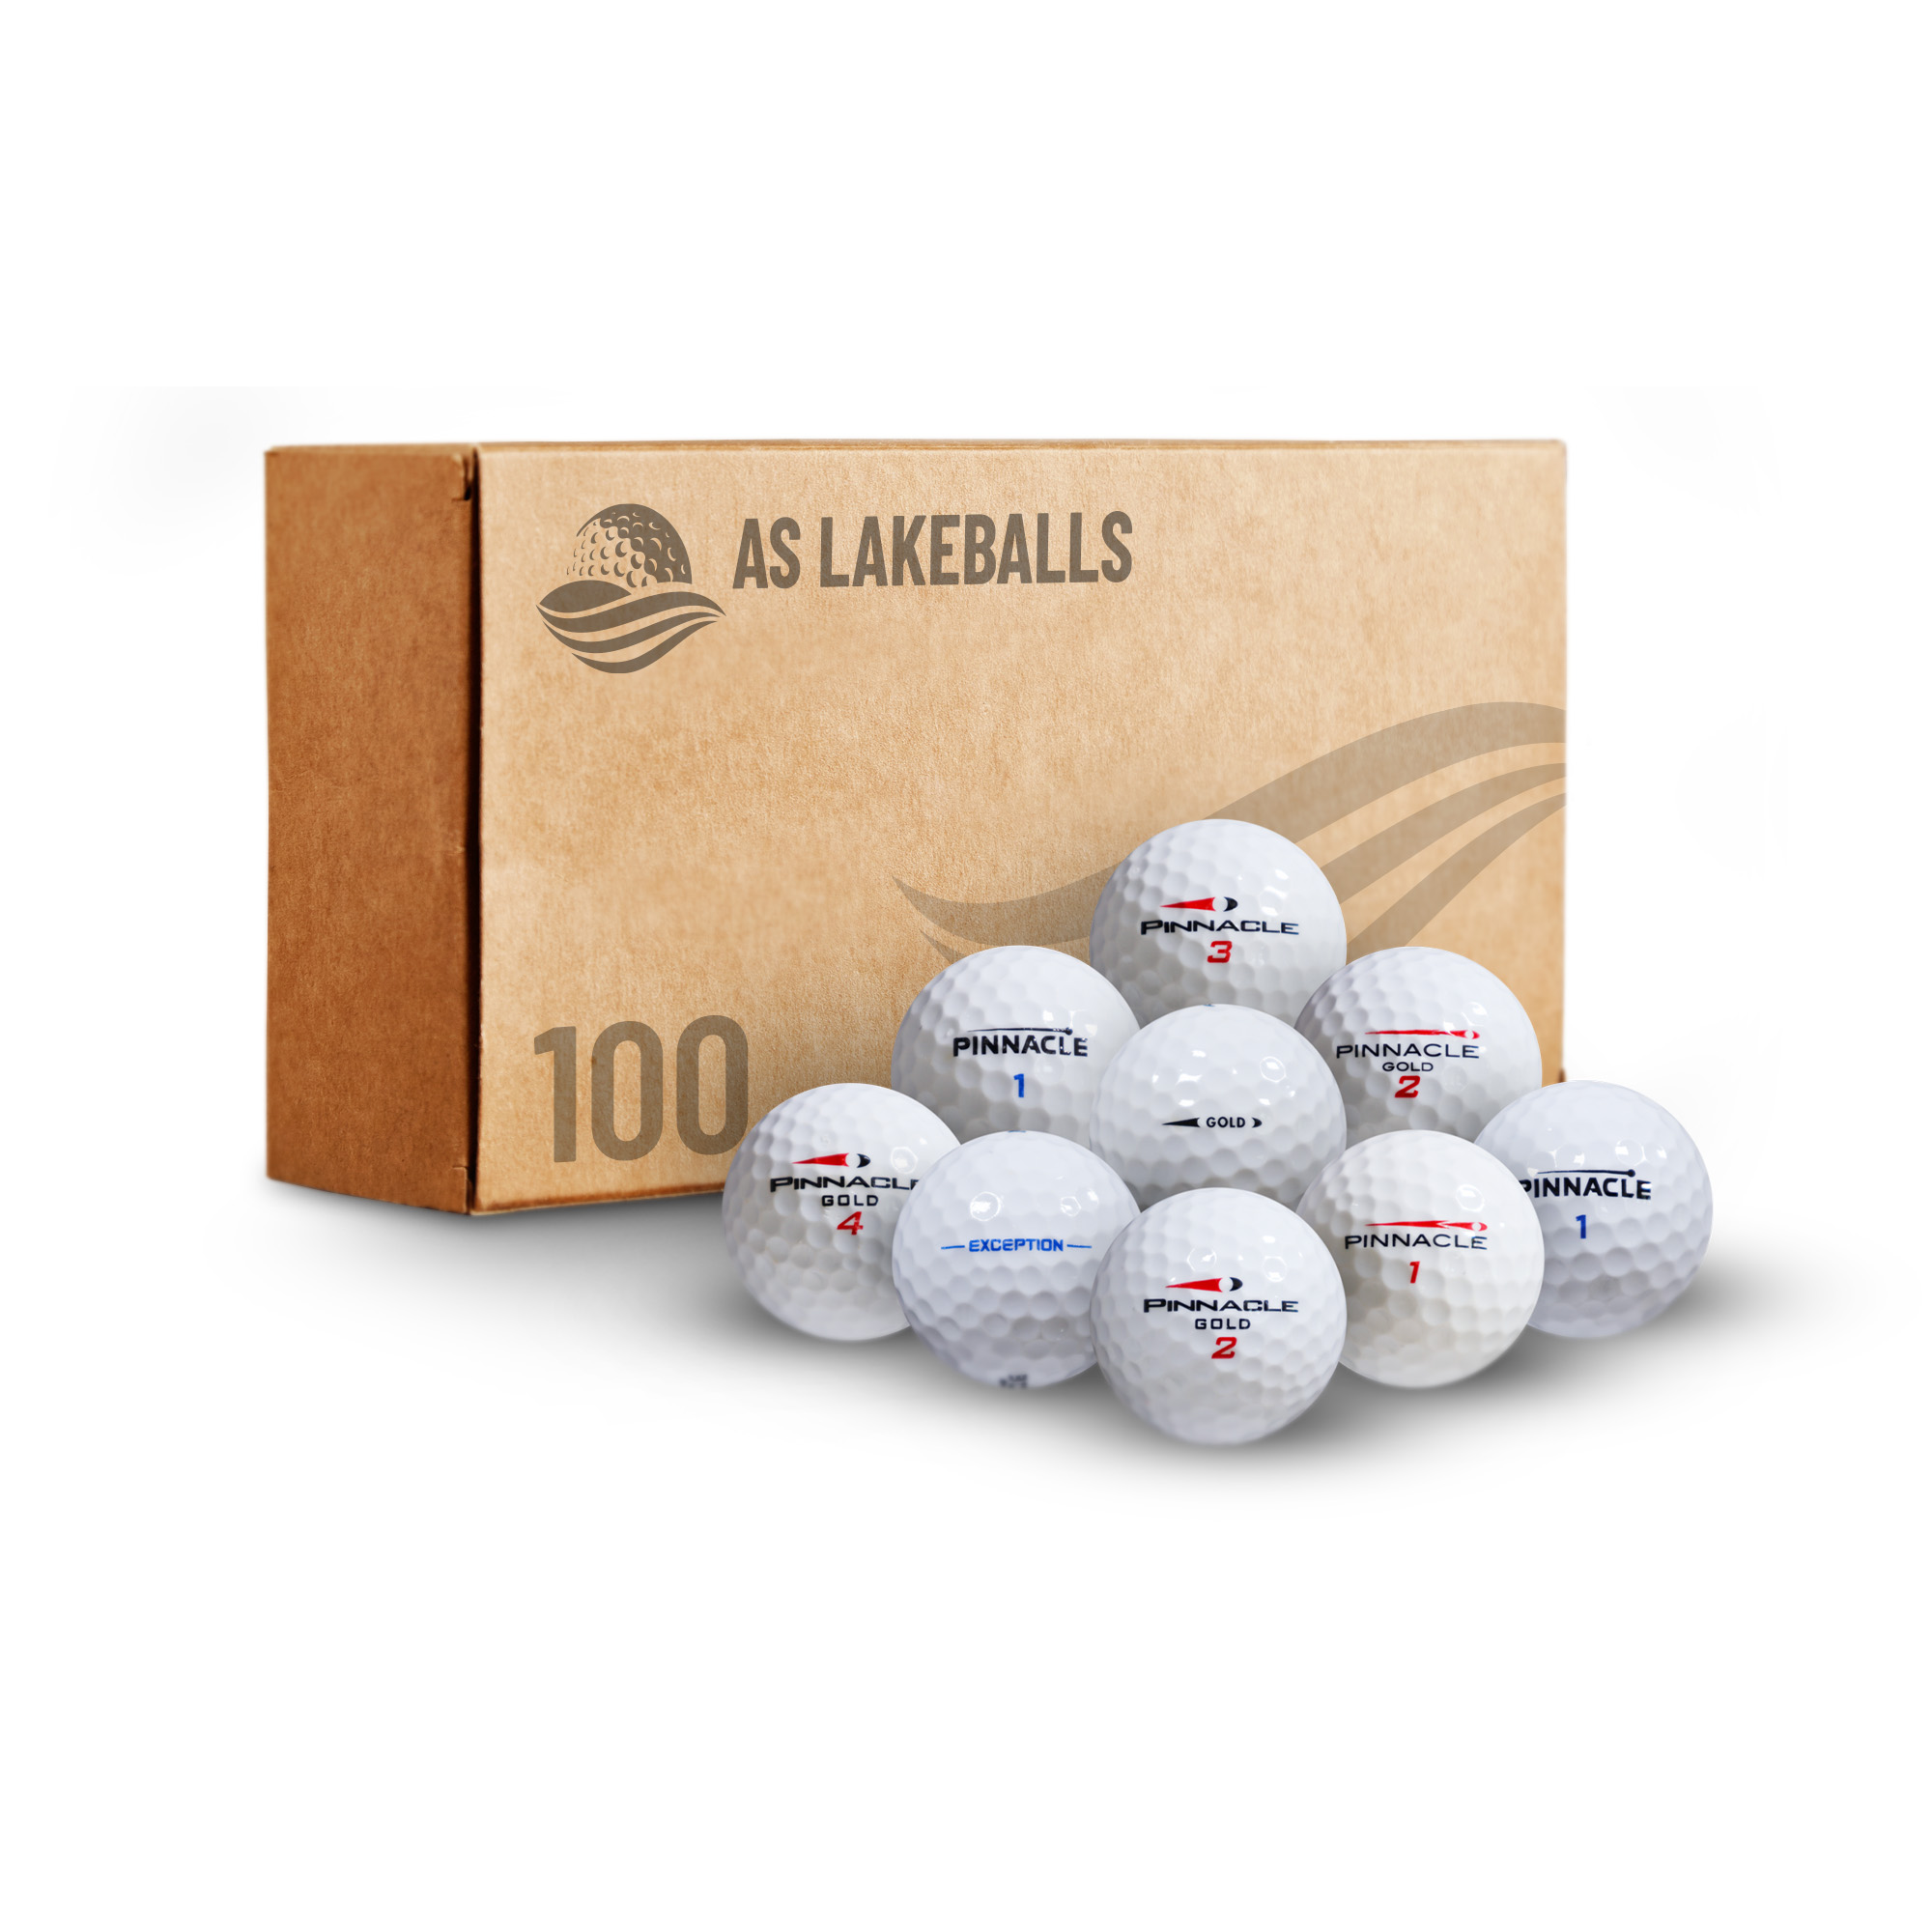 100 Pinnacle Mix AA-AAA bei AS Lakeballs günstig kaufen